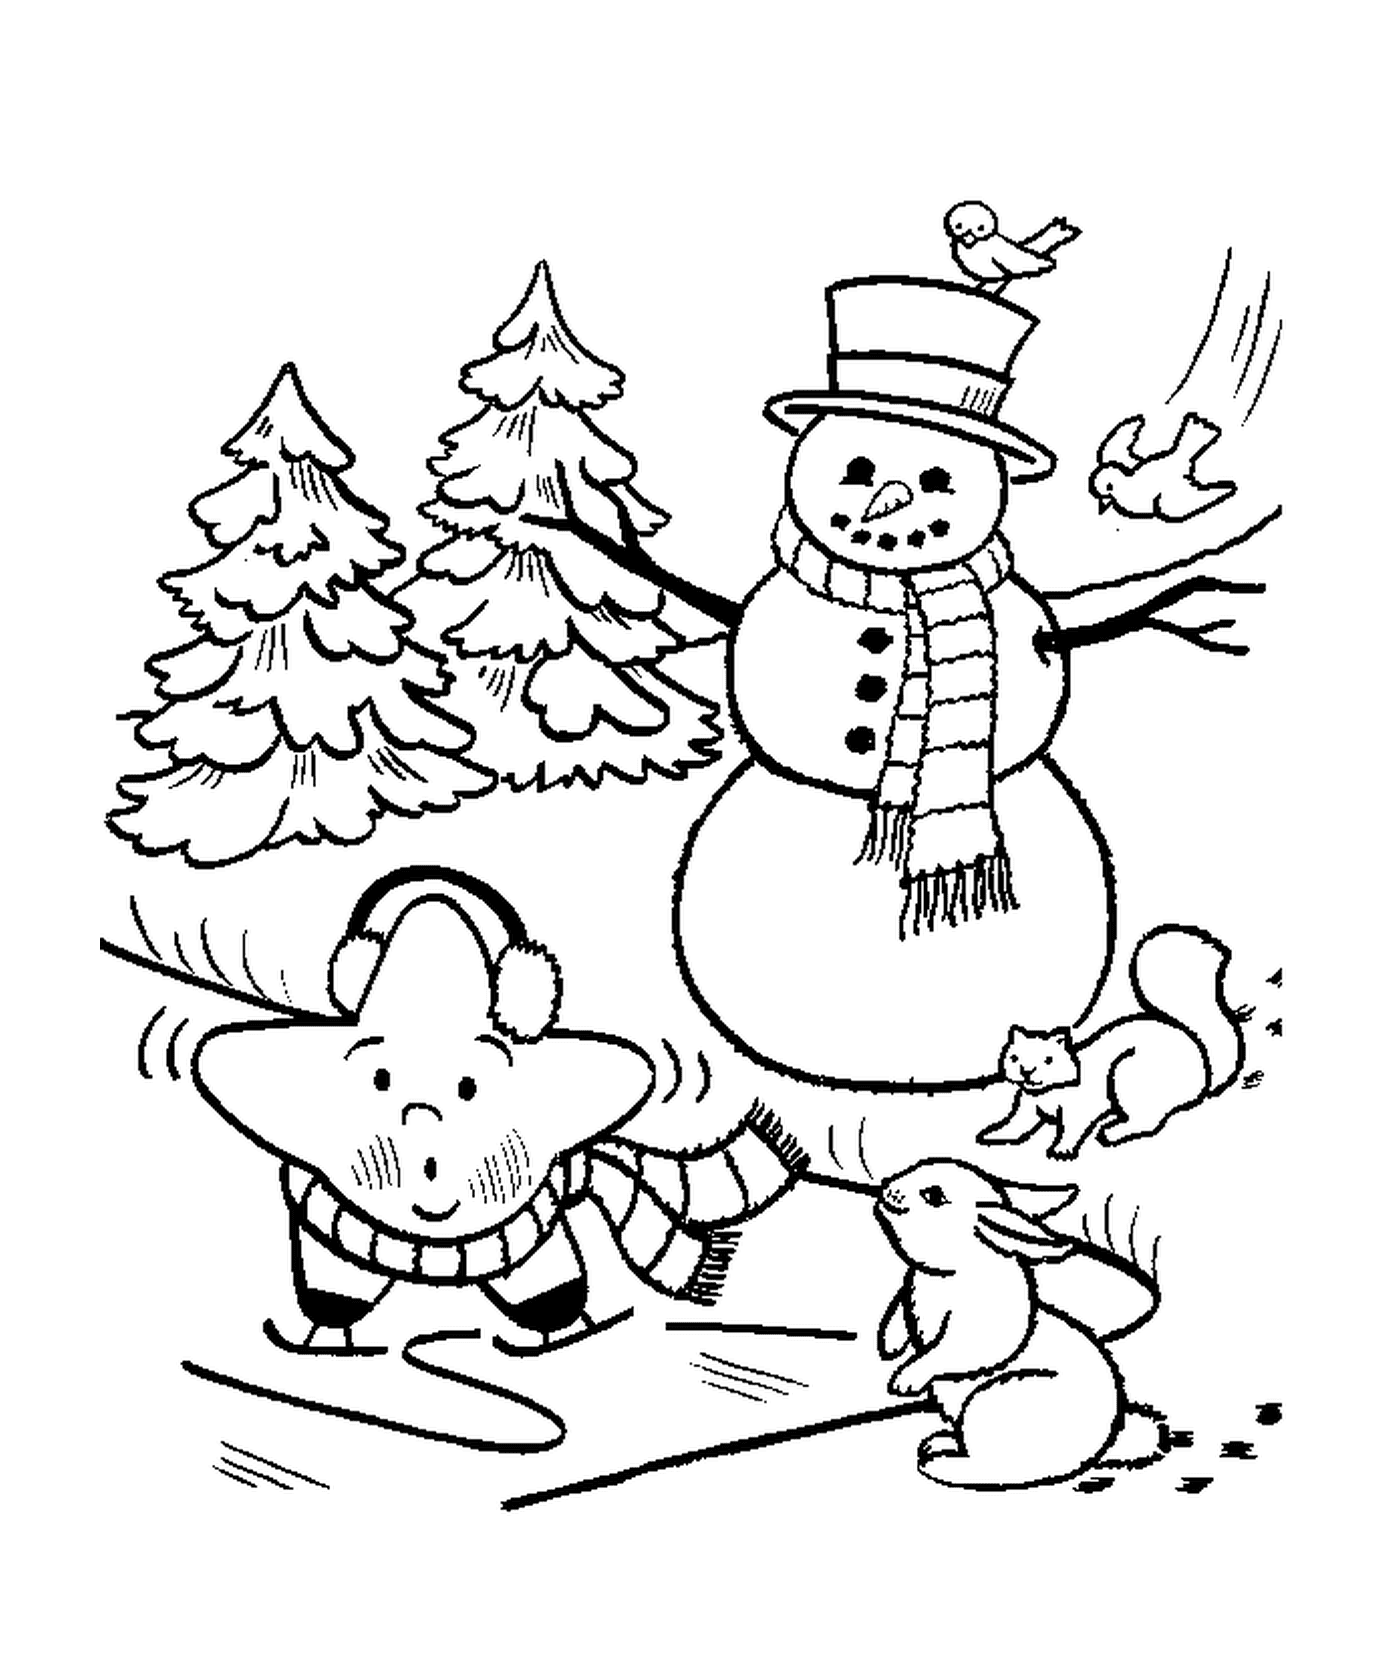   Bonhomme de neige, écureuil et étoile 